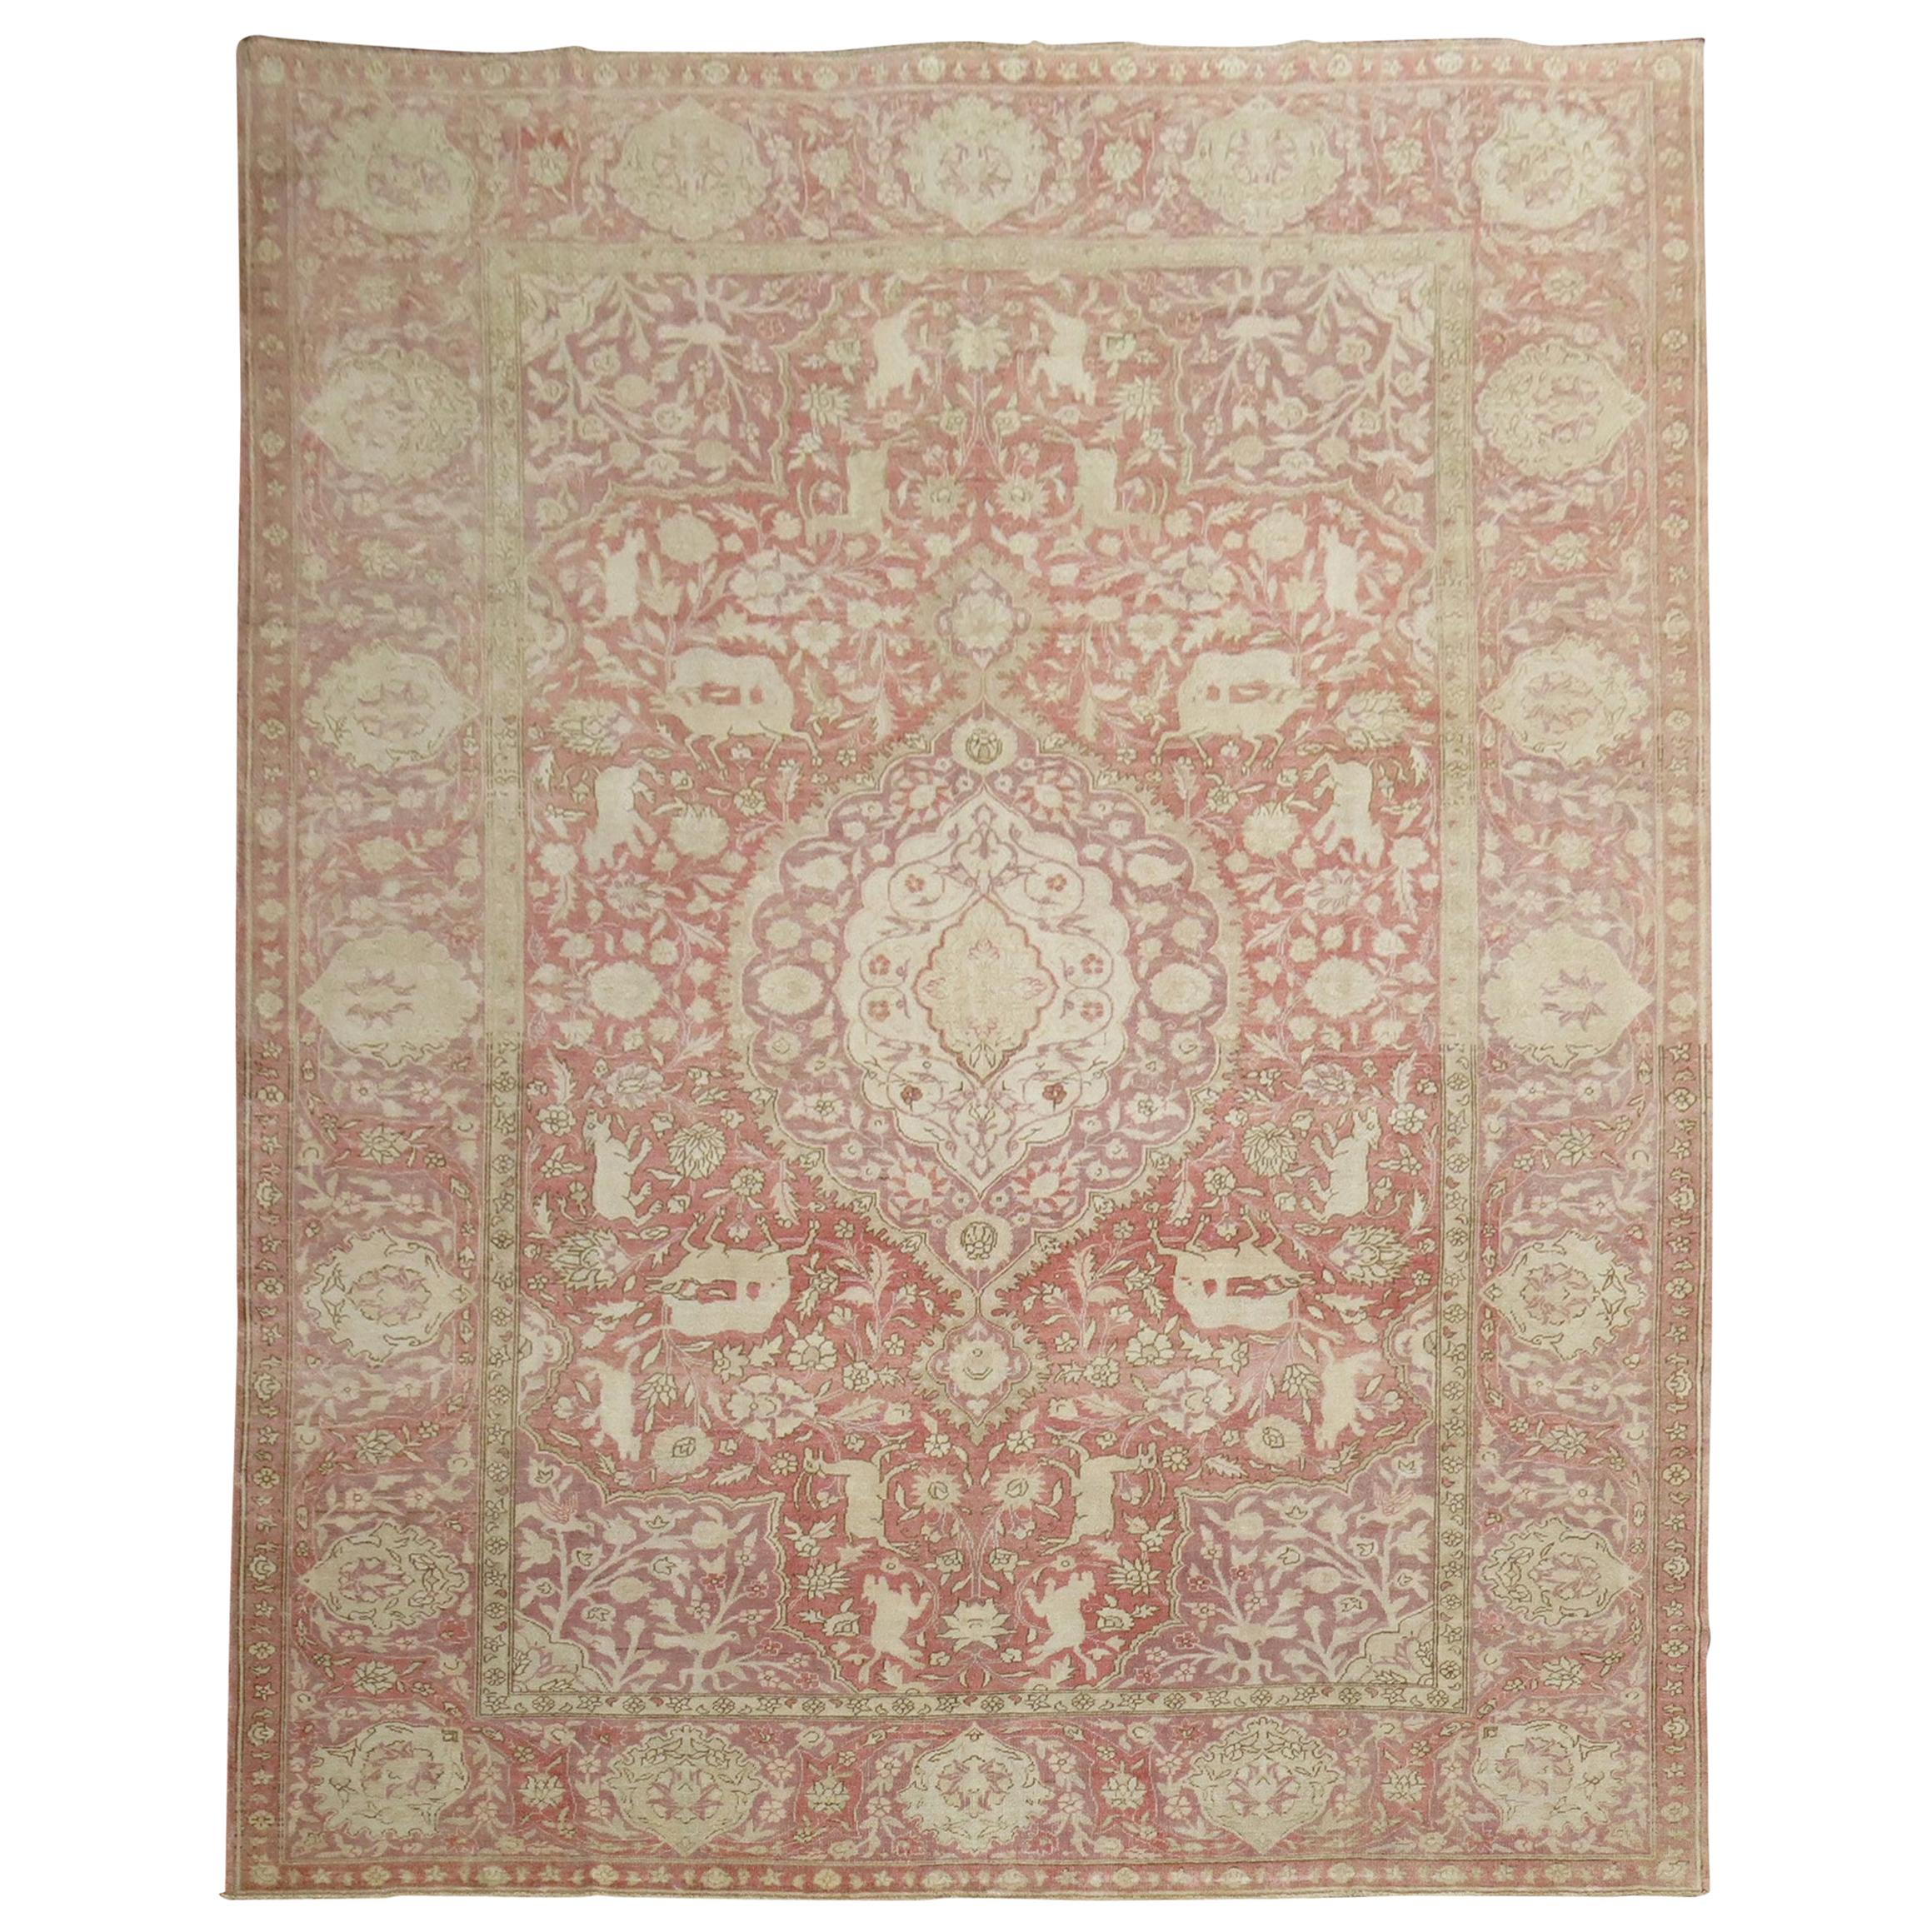 Türkischer Teppich mit Tiermotiv in Rosa und Lavendel in Zimmergröße, 20. Jahrhundert